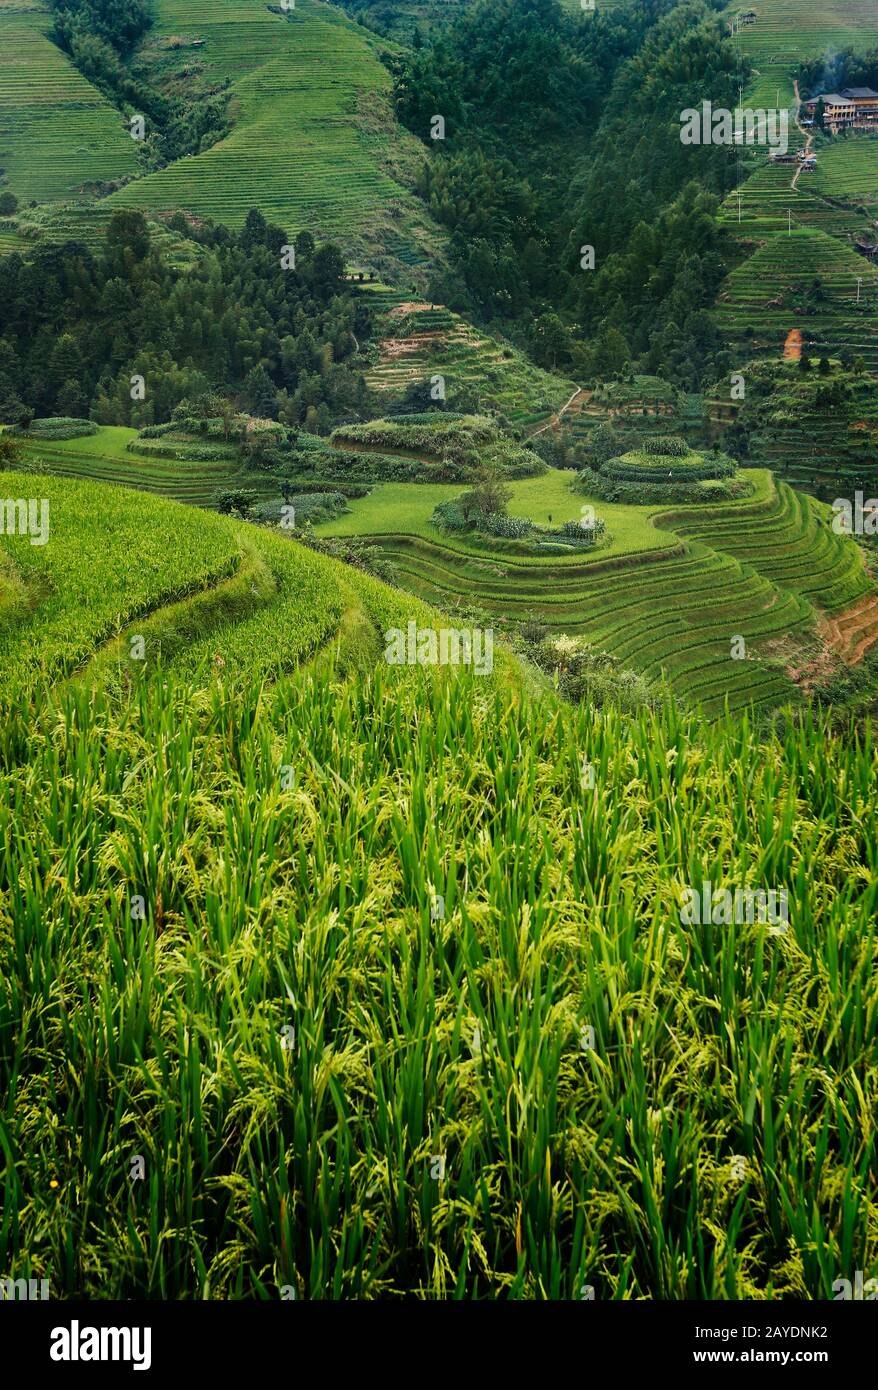 Terrasse rizicole déposée dans la campagne de Dazhai, province de Shanxi, Chine Banque D'Images